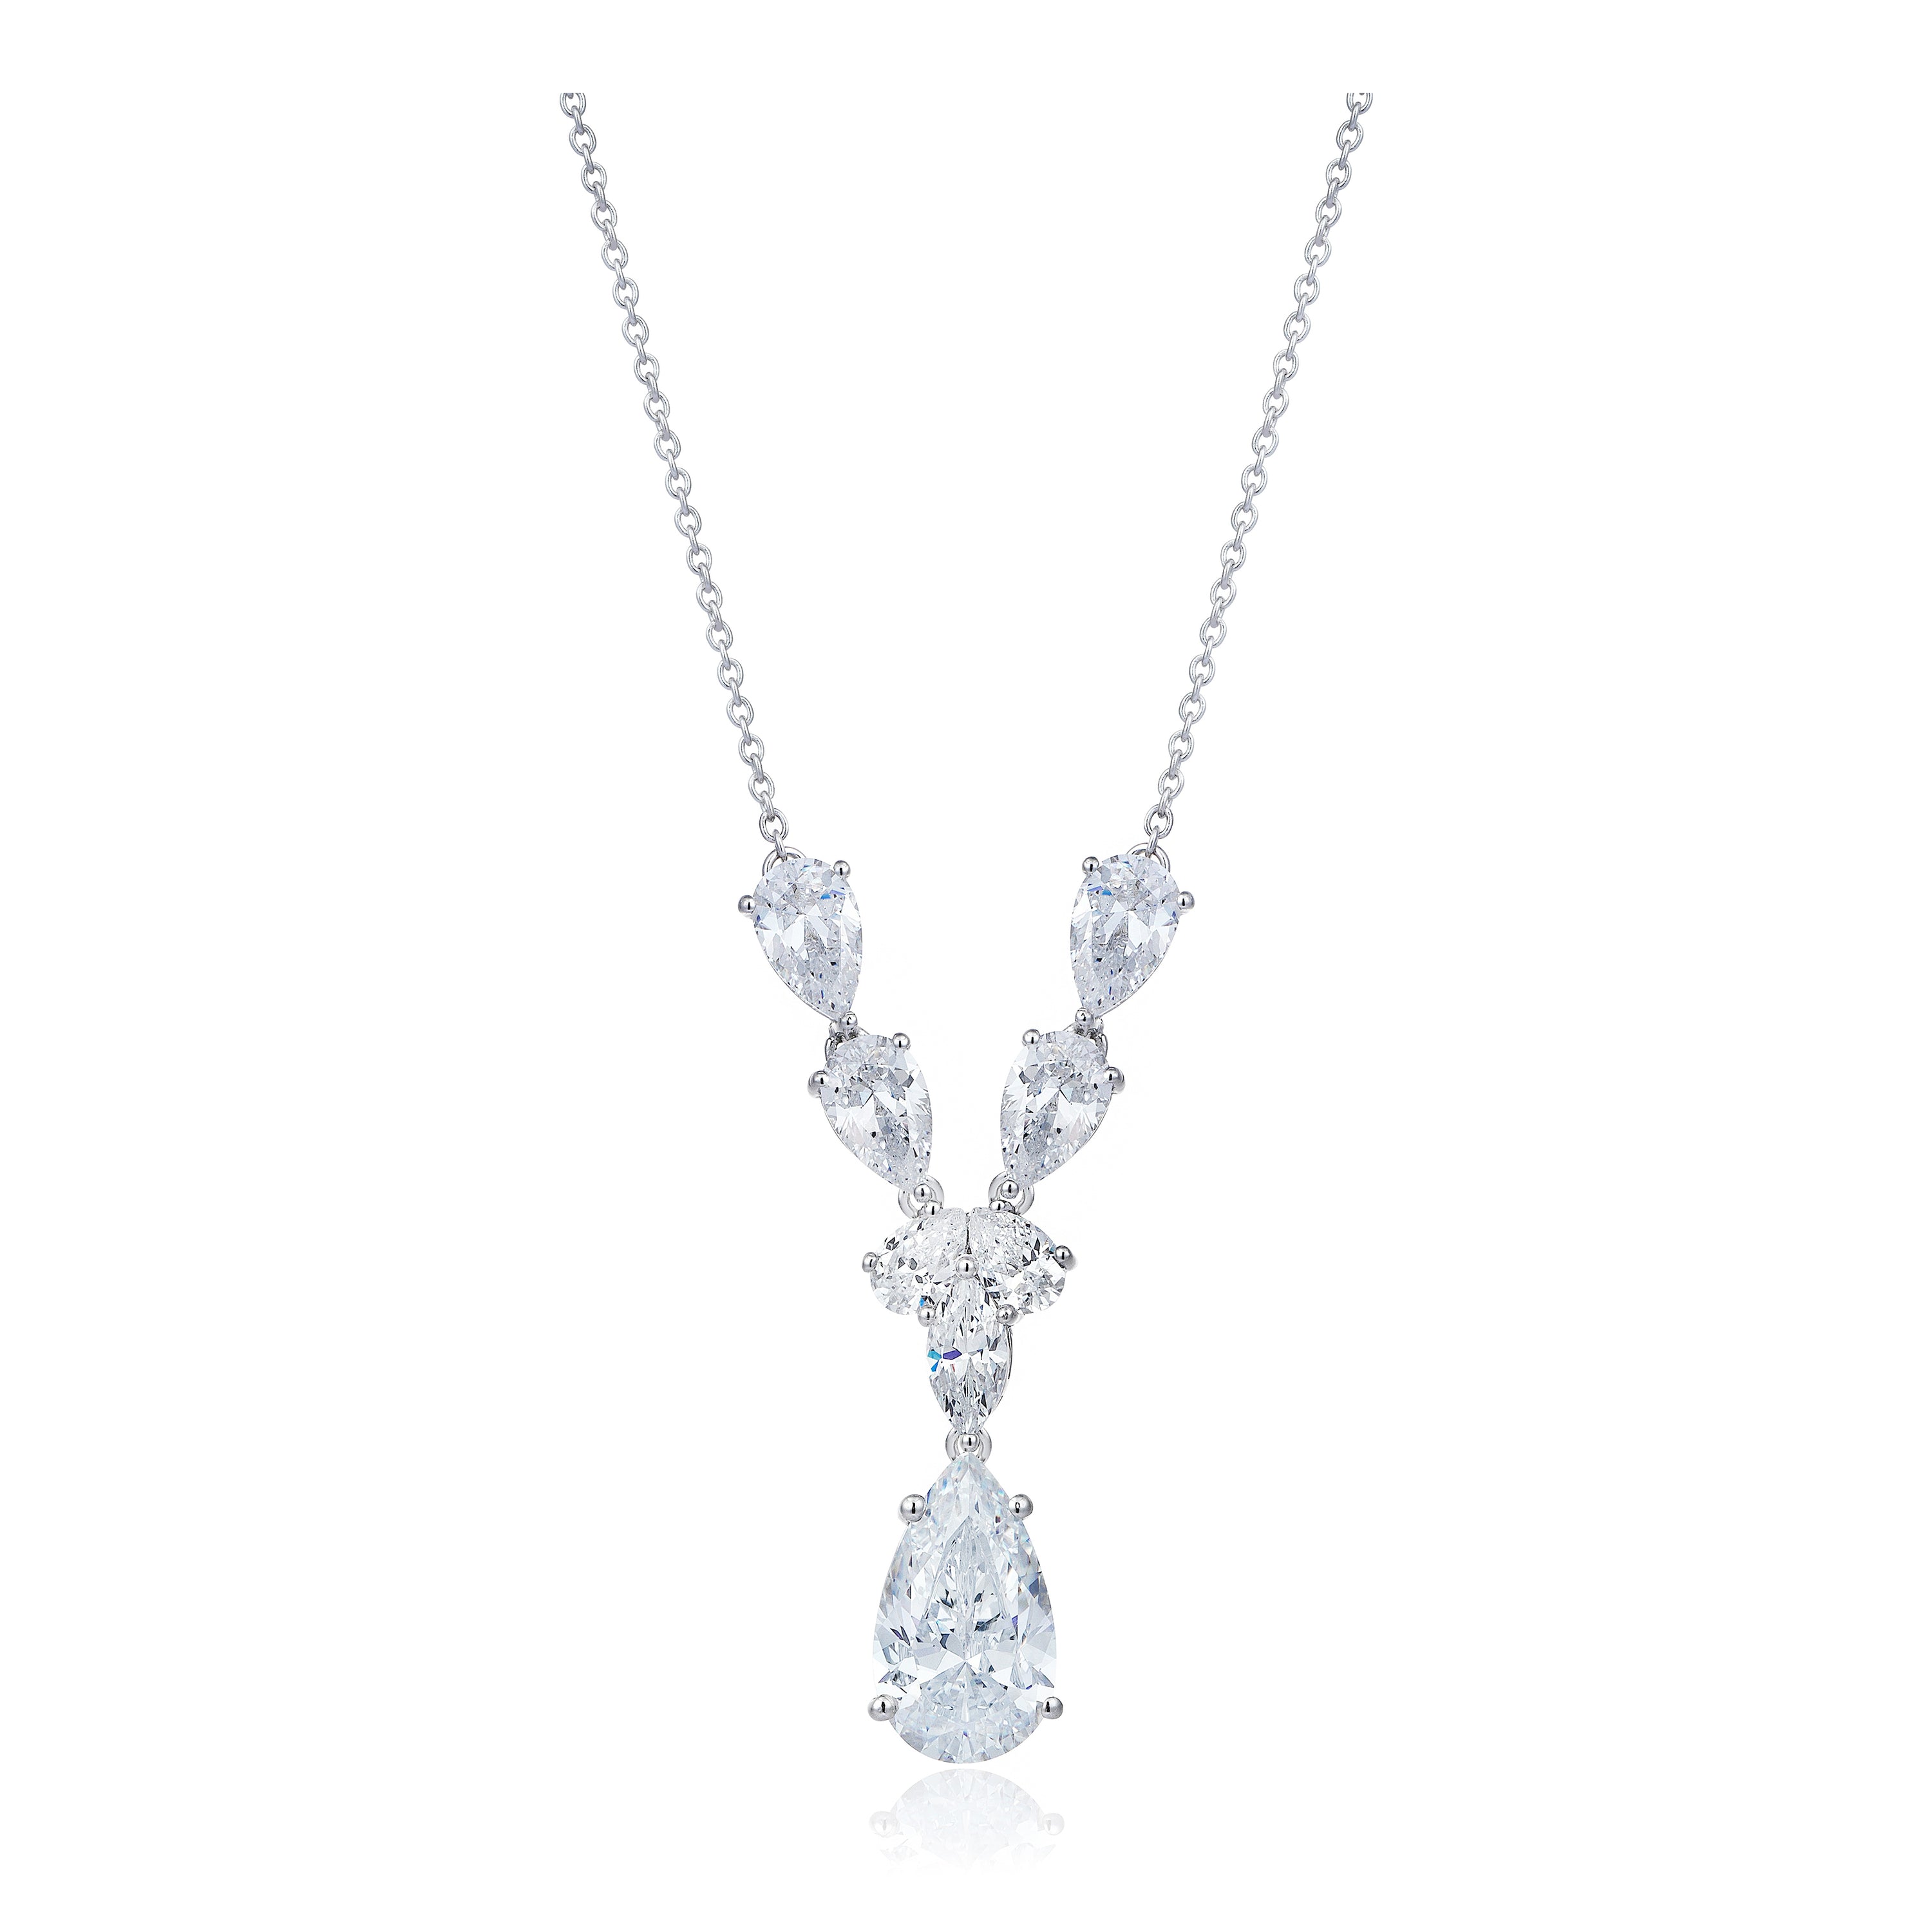 4 Carat Drop Diamond Necklace